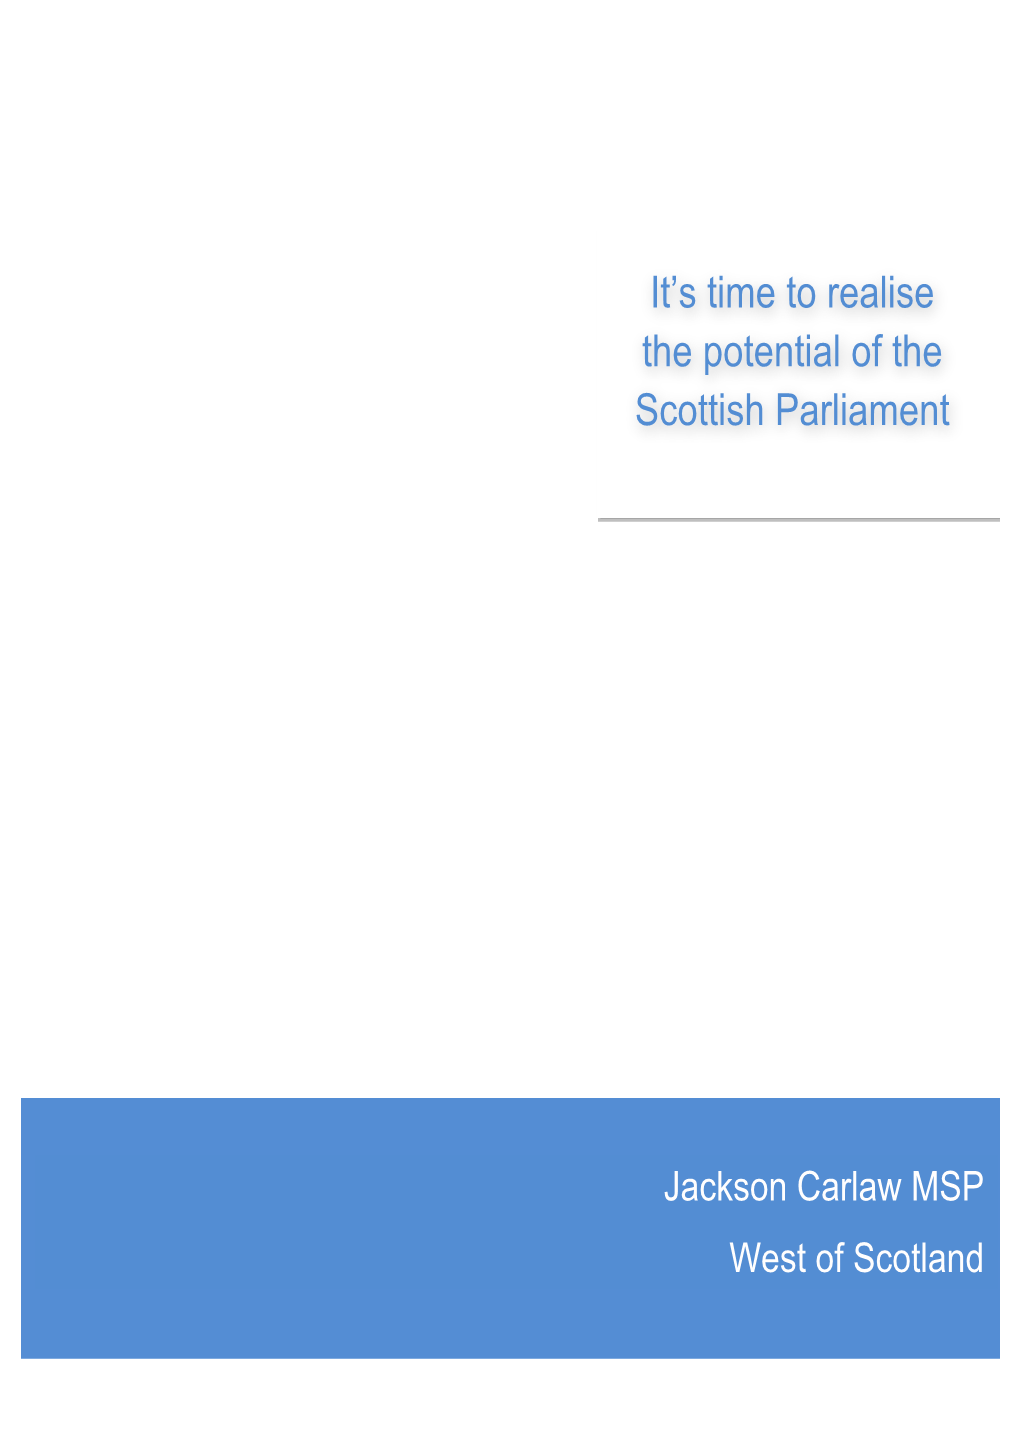 Jackson Carlaw MSP West of Scotland